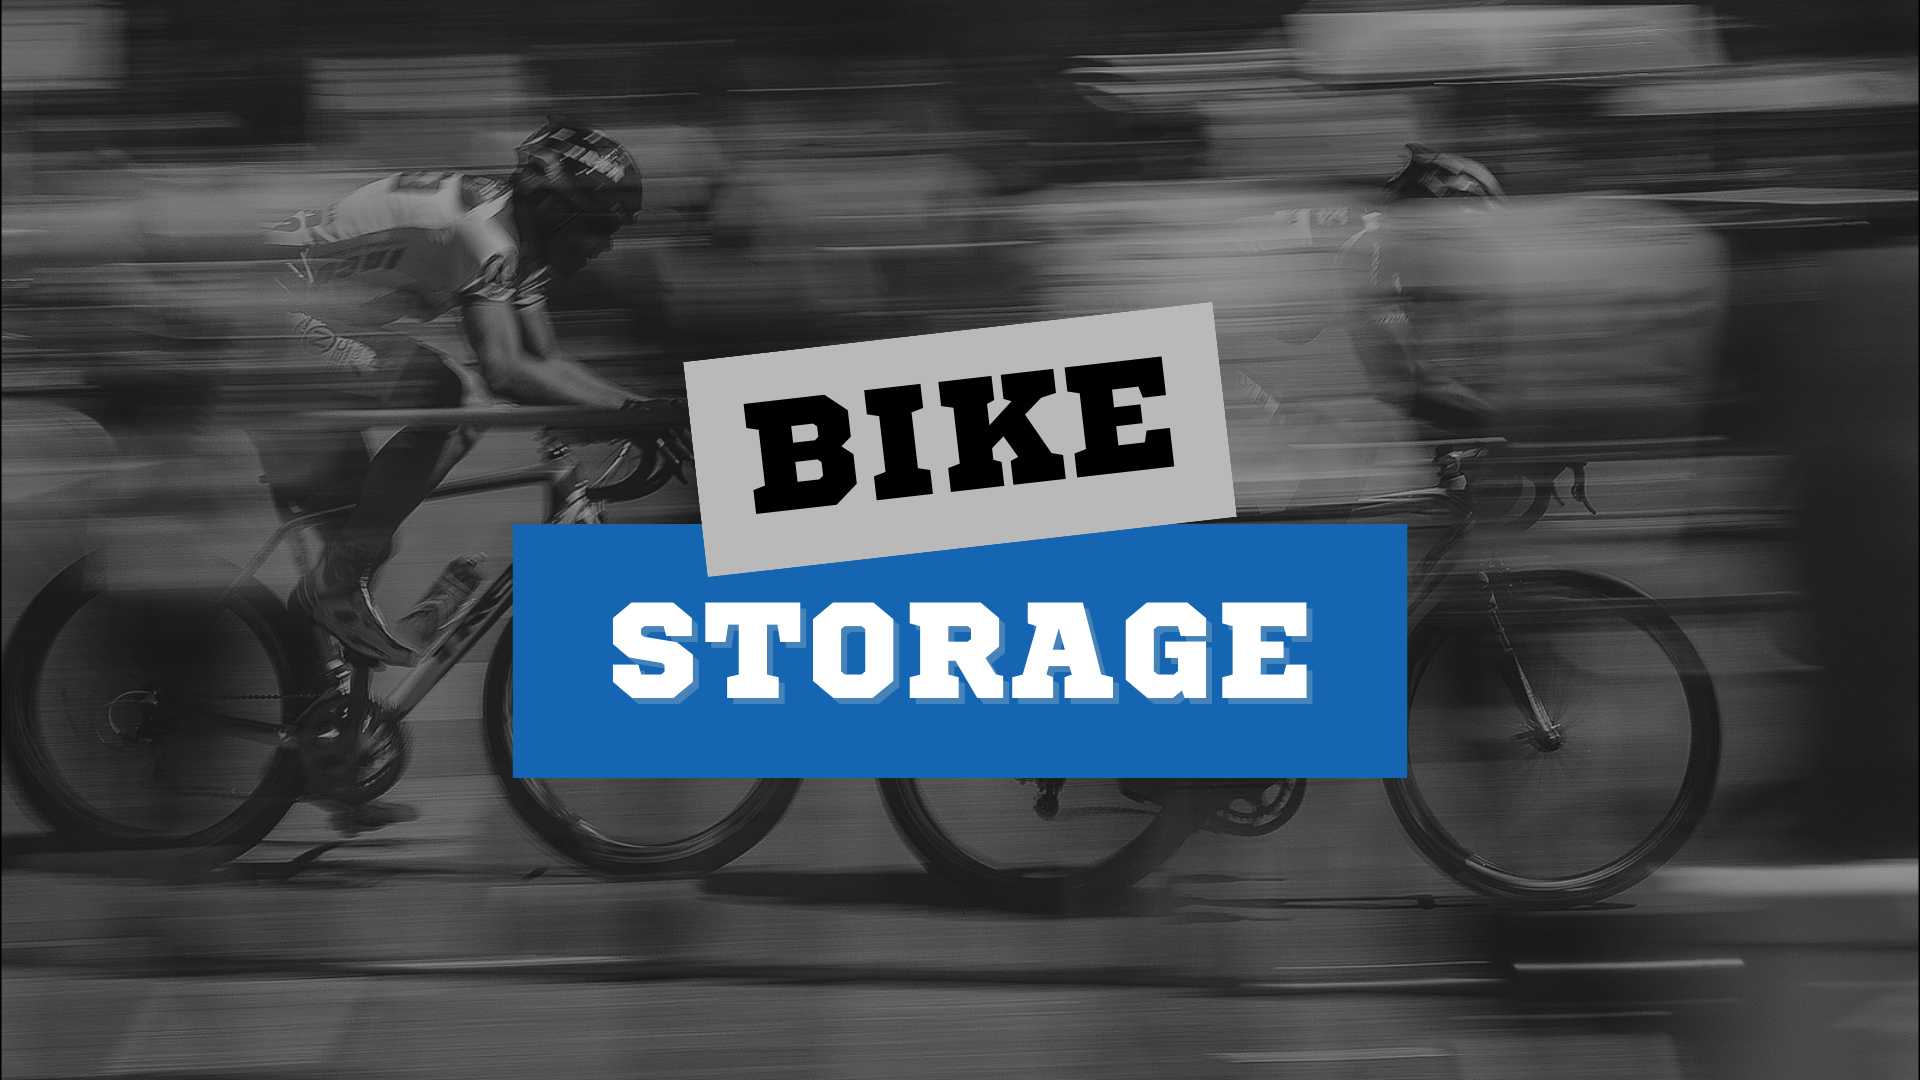 Bike Storage Solutions with Proslat